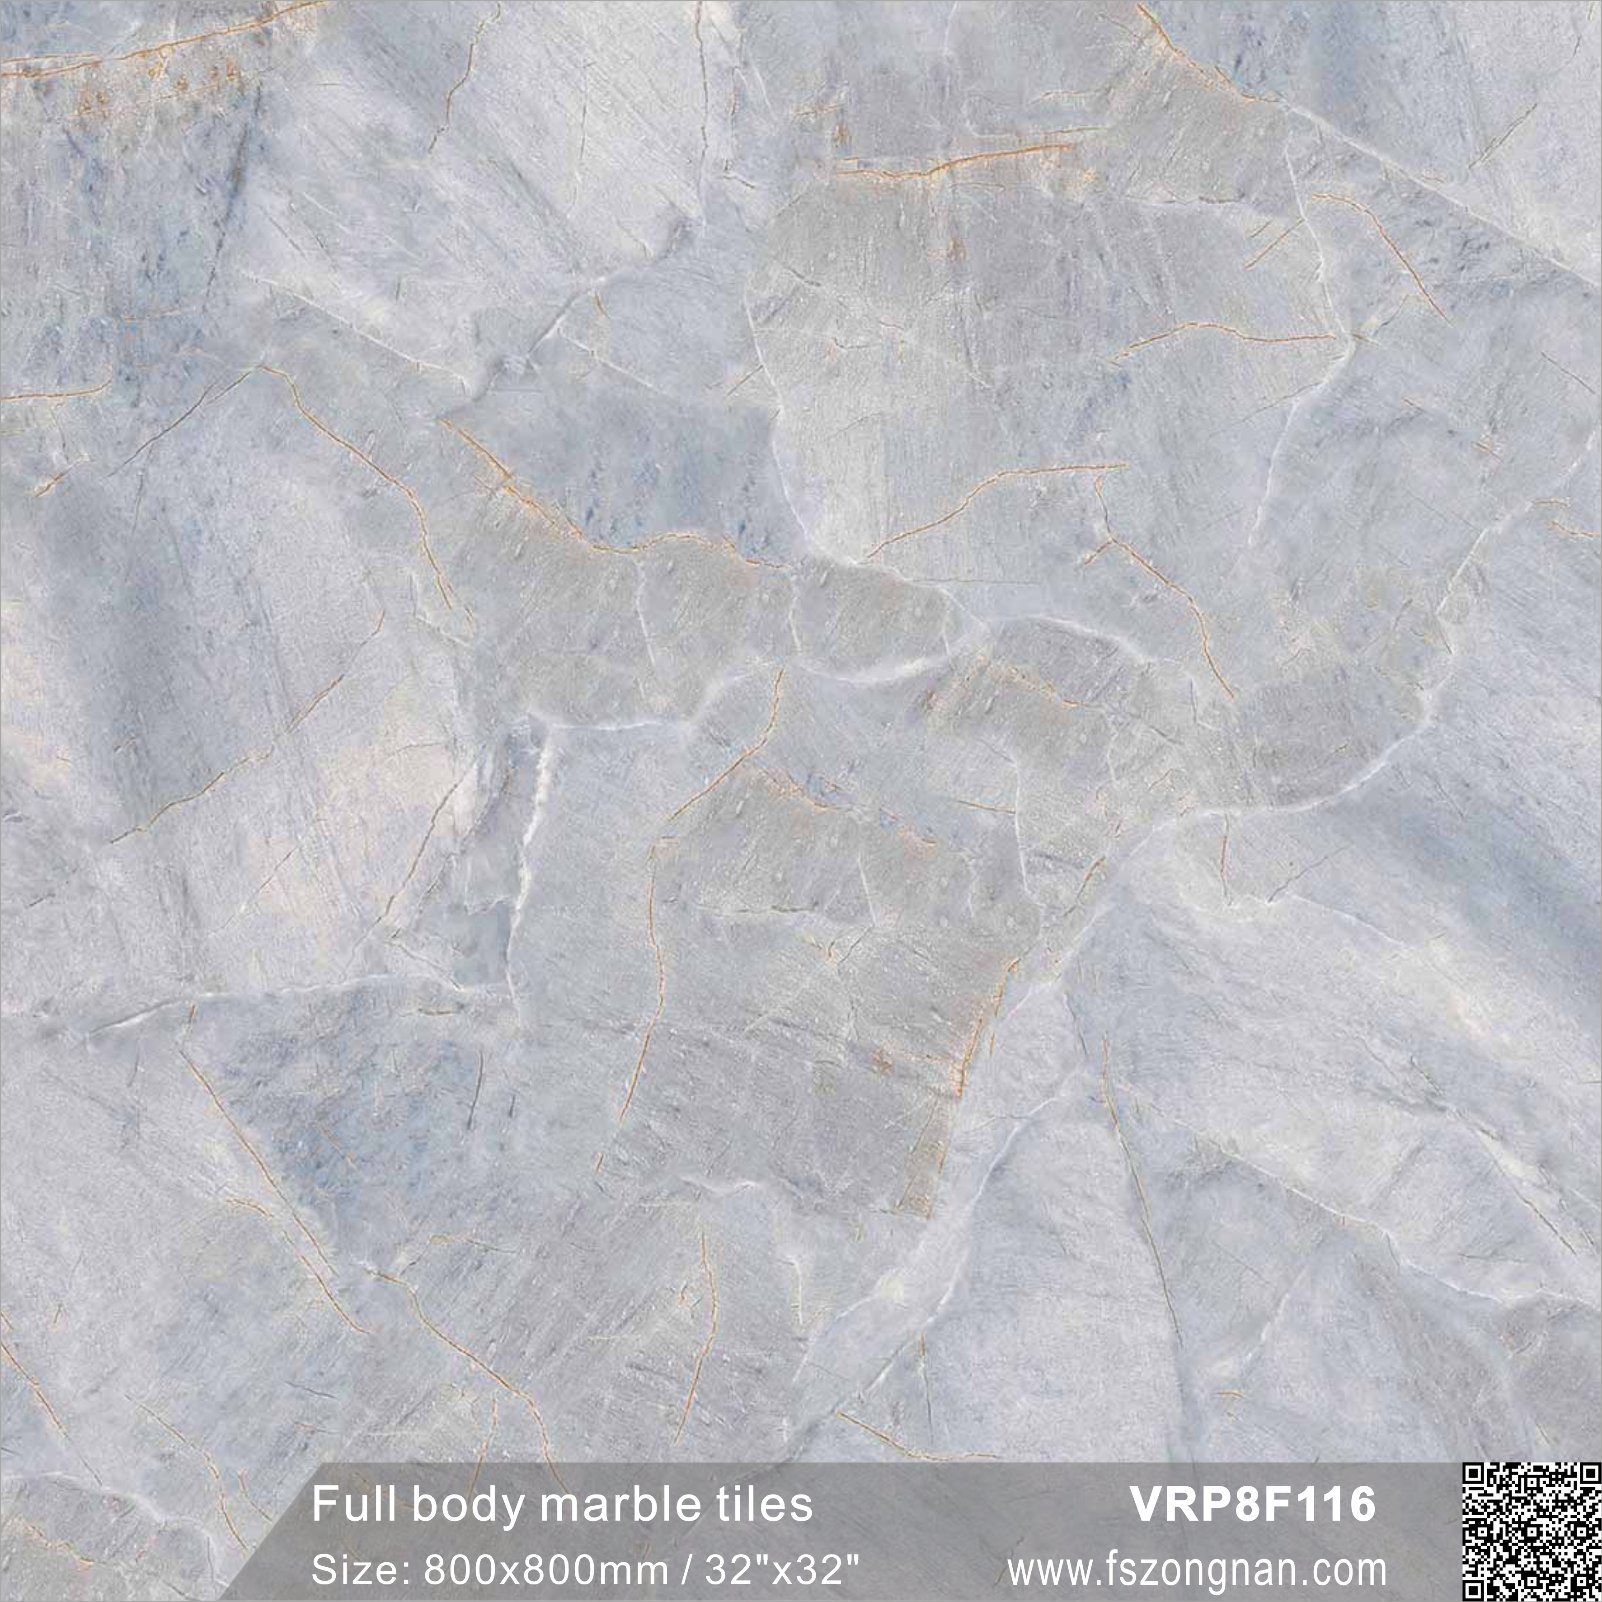 Full Body Marble Glazed Floor Tile for Building Material (VRP8F116, 800X800mm/32''x32'')